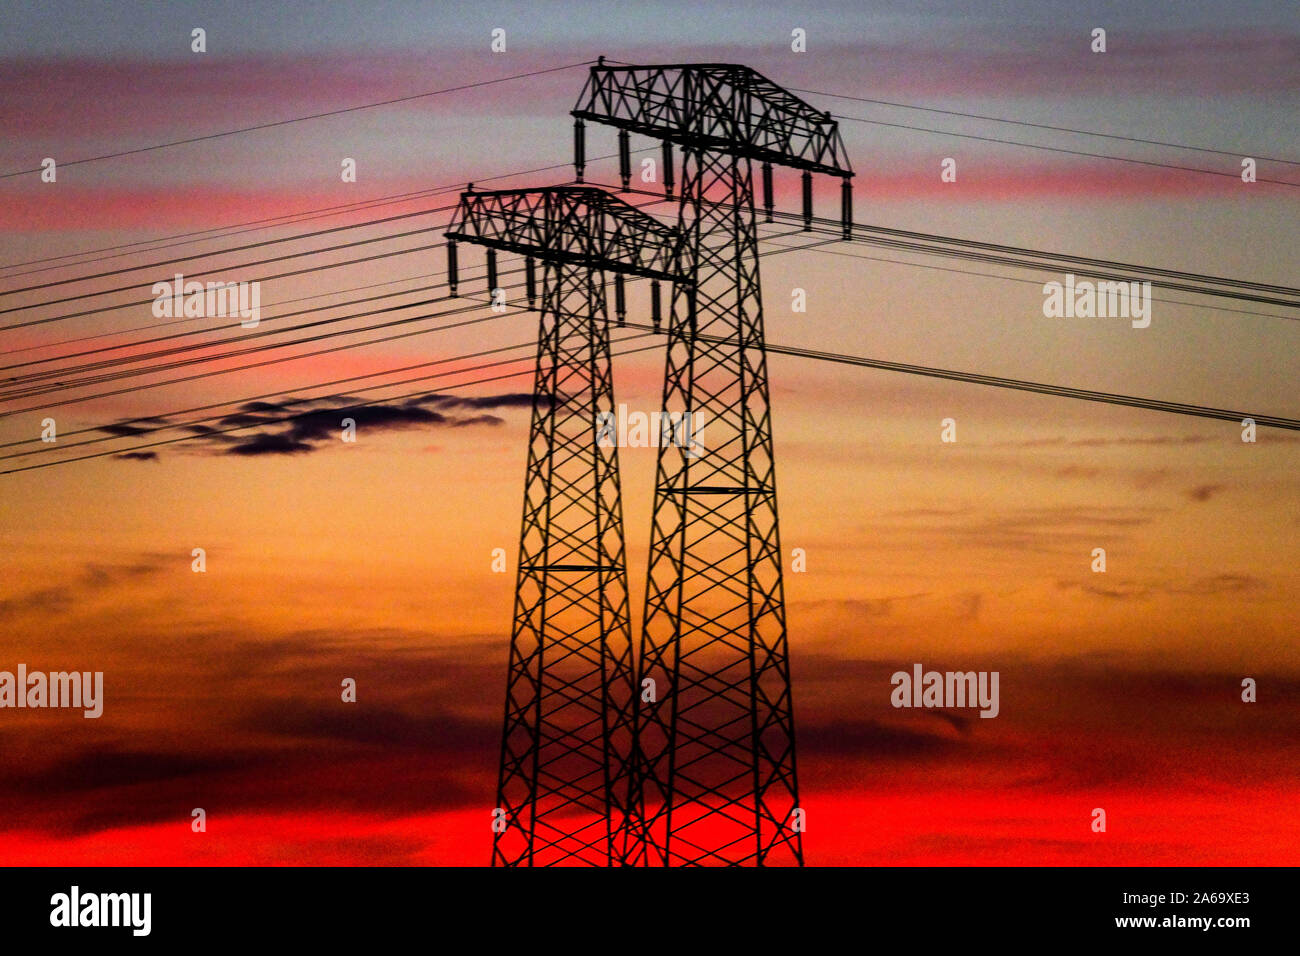 Hochspannungsleitungen Sunset Pylons Transmissionsenergie Deutschland globale Erwärmung Klimawandel Sky-Drähte, die mit einer Anlage verbunden sind Stockfoto